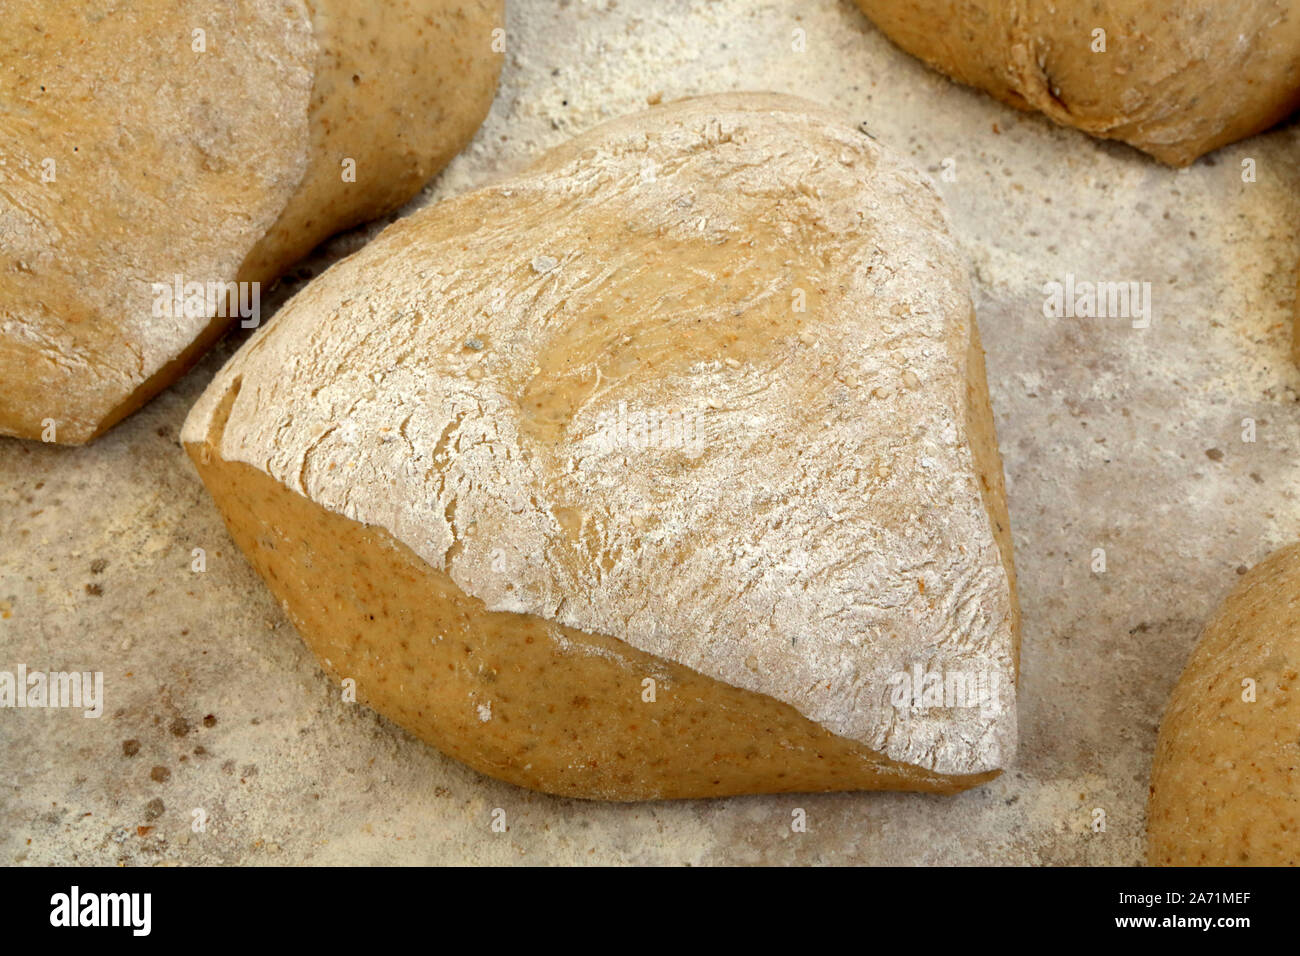 Fabrication artisanale de pains. / Traditional bread making. Saint-Gervais-les-Bains. Haute-Savoie. France. Stock Photo